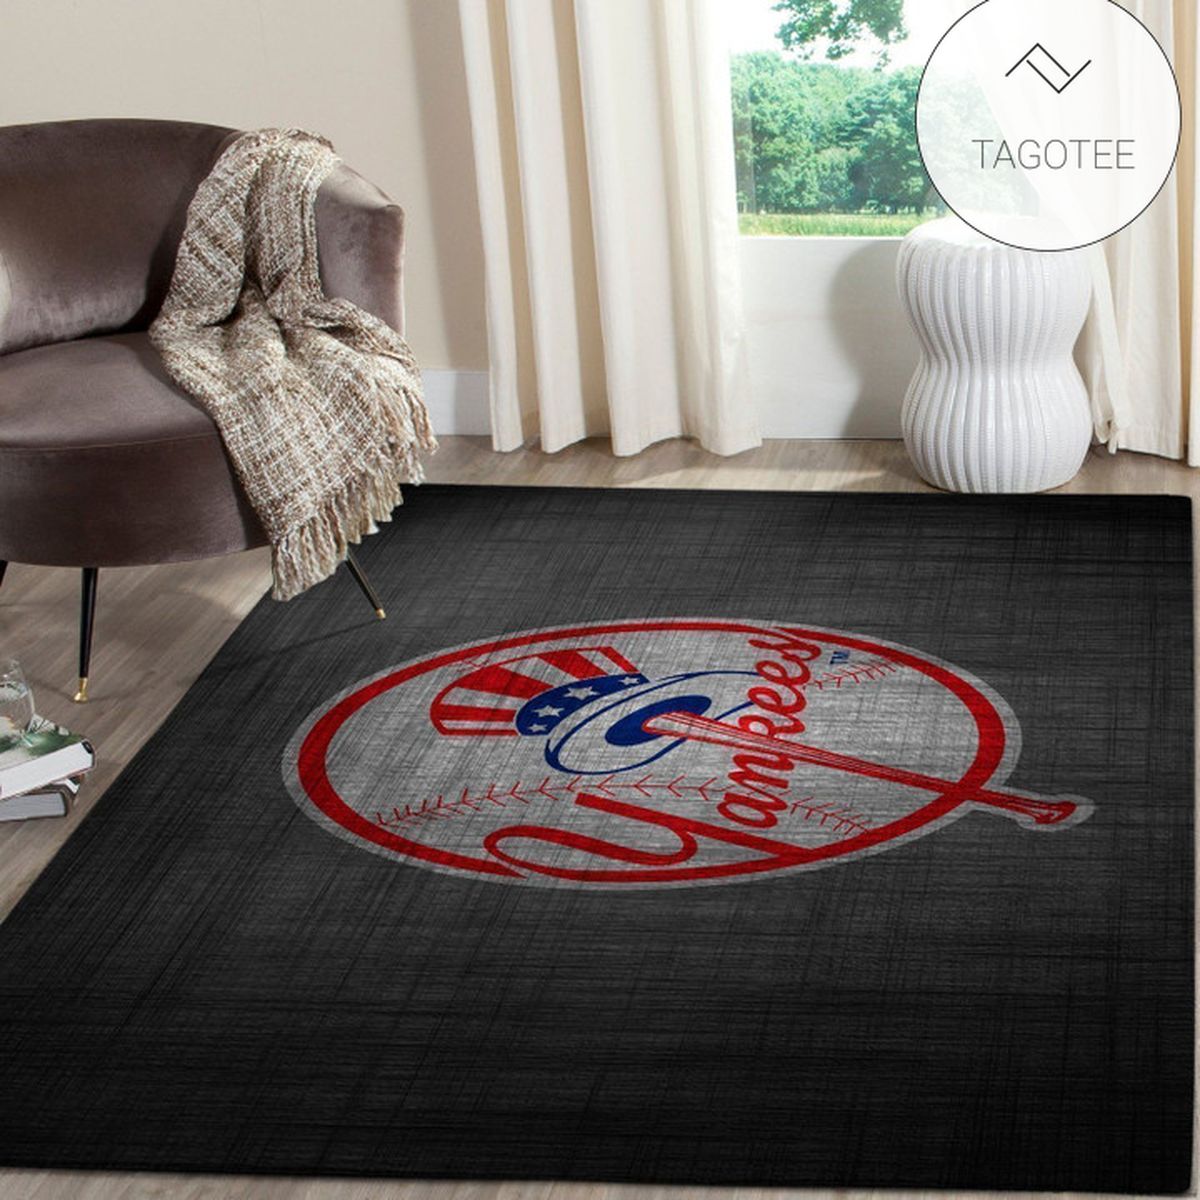 New York Yankees Area Rug MLB Baseball Team Logo Carpet Living Room Rugs Floor Decor 1912215